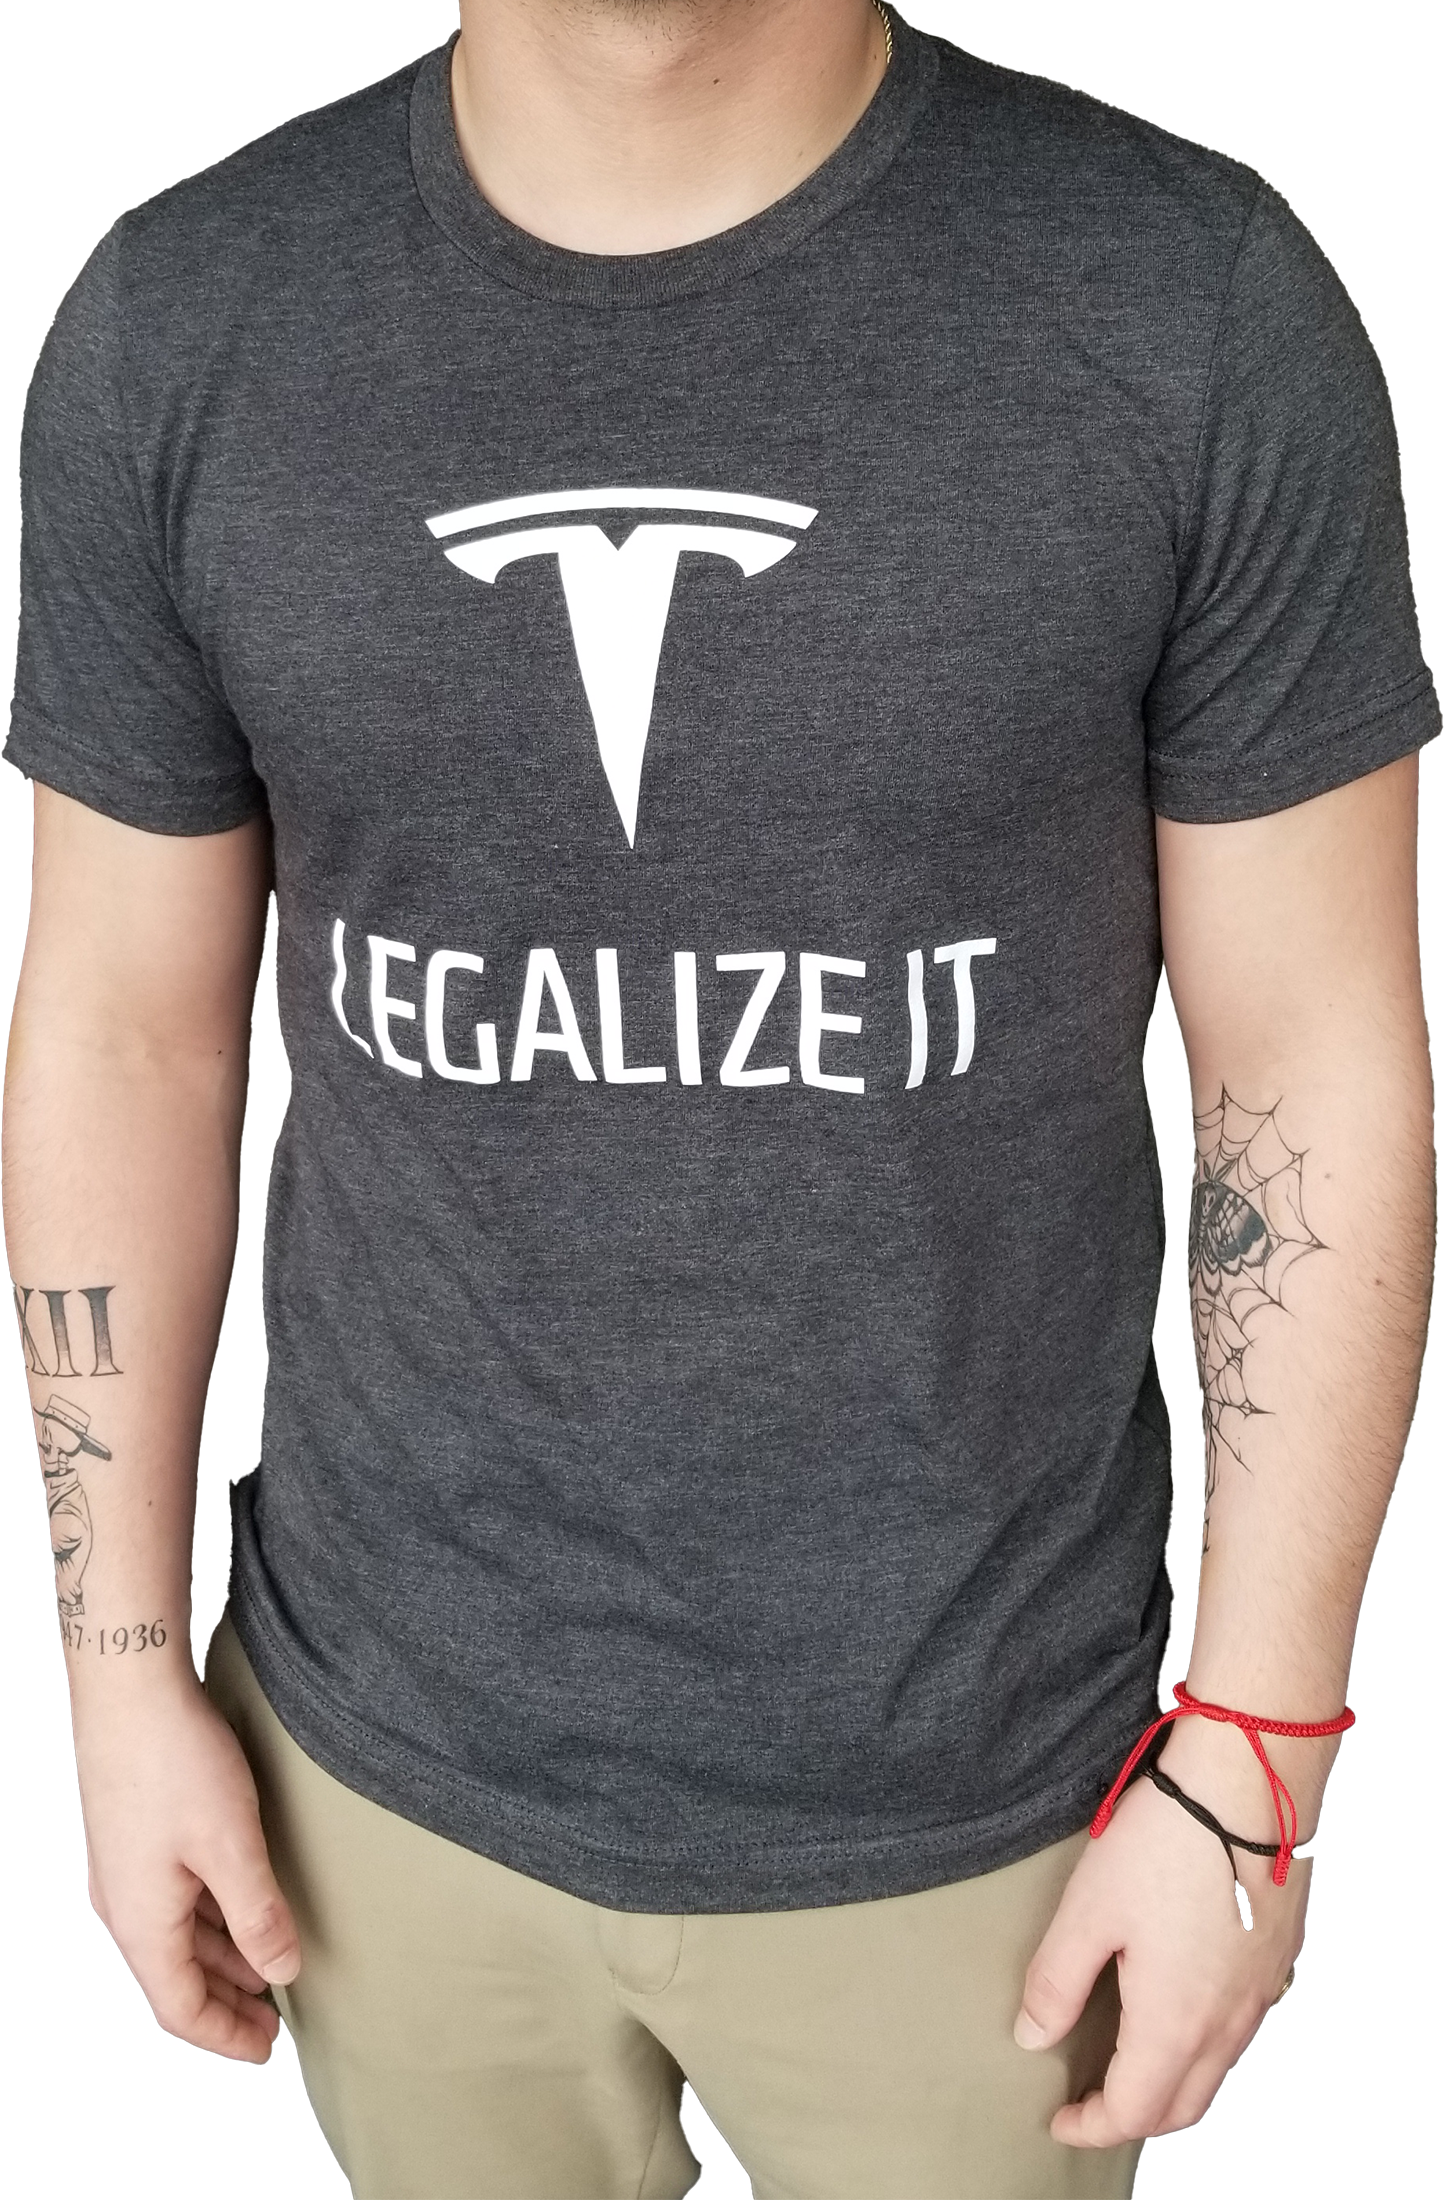 Tesla Legalize It T-Shirt